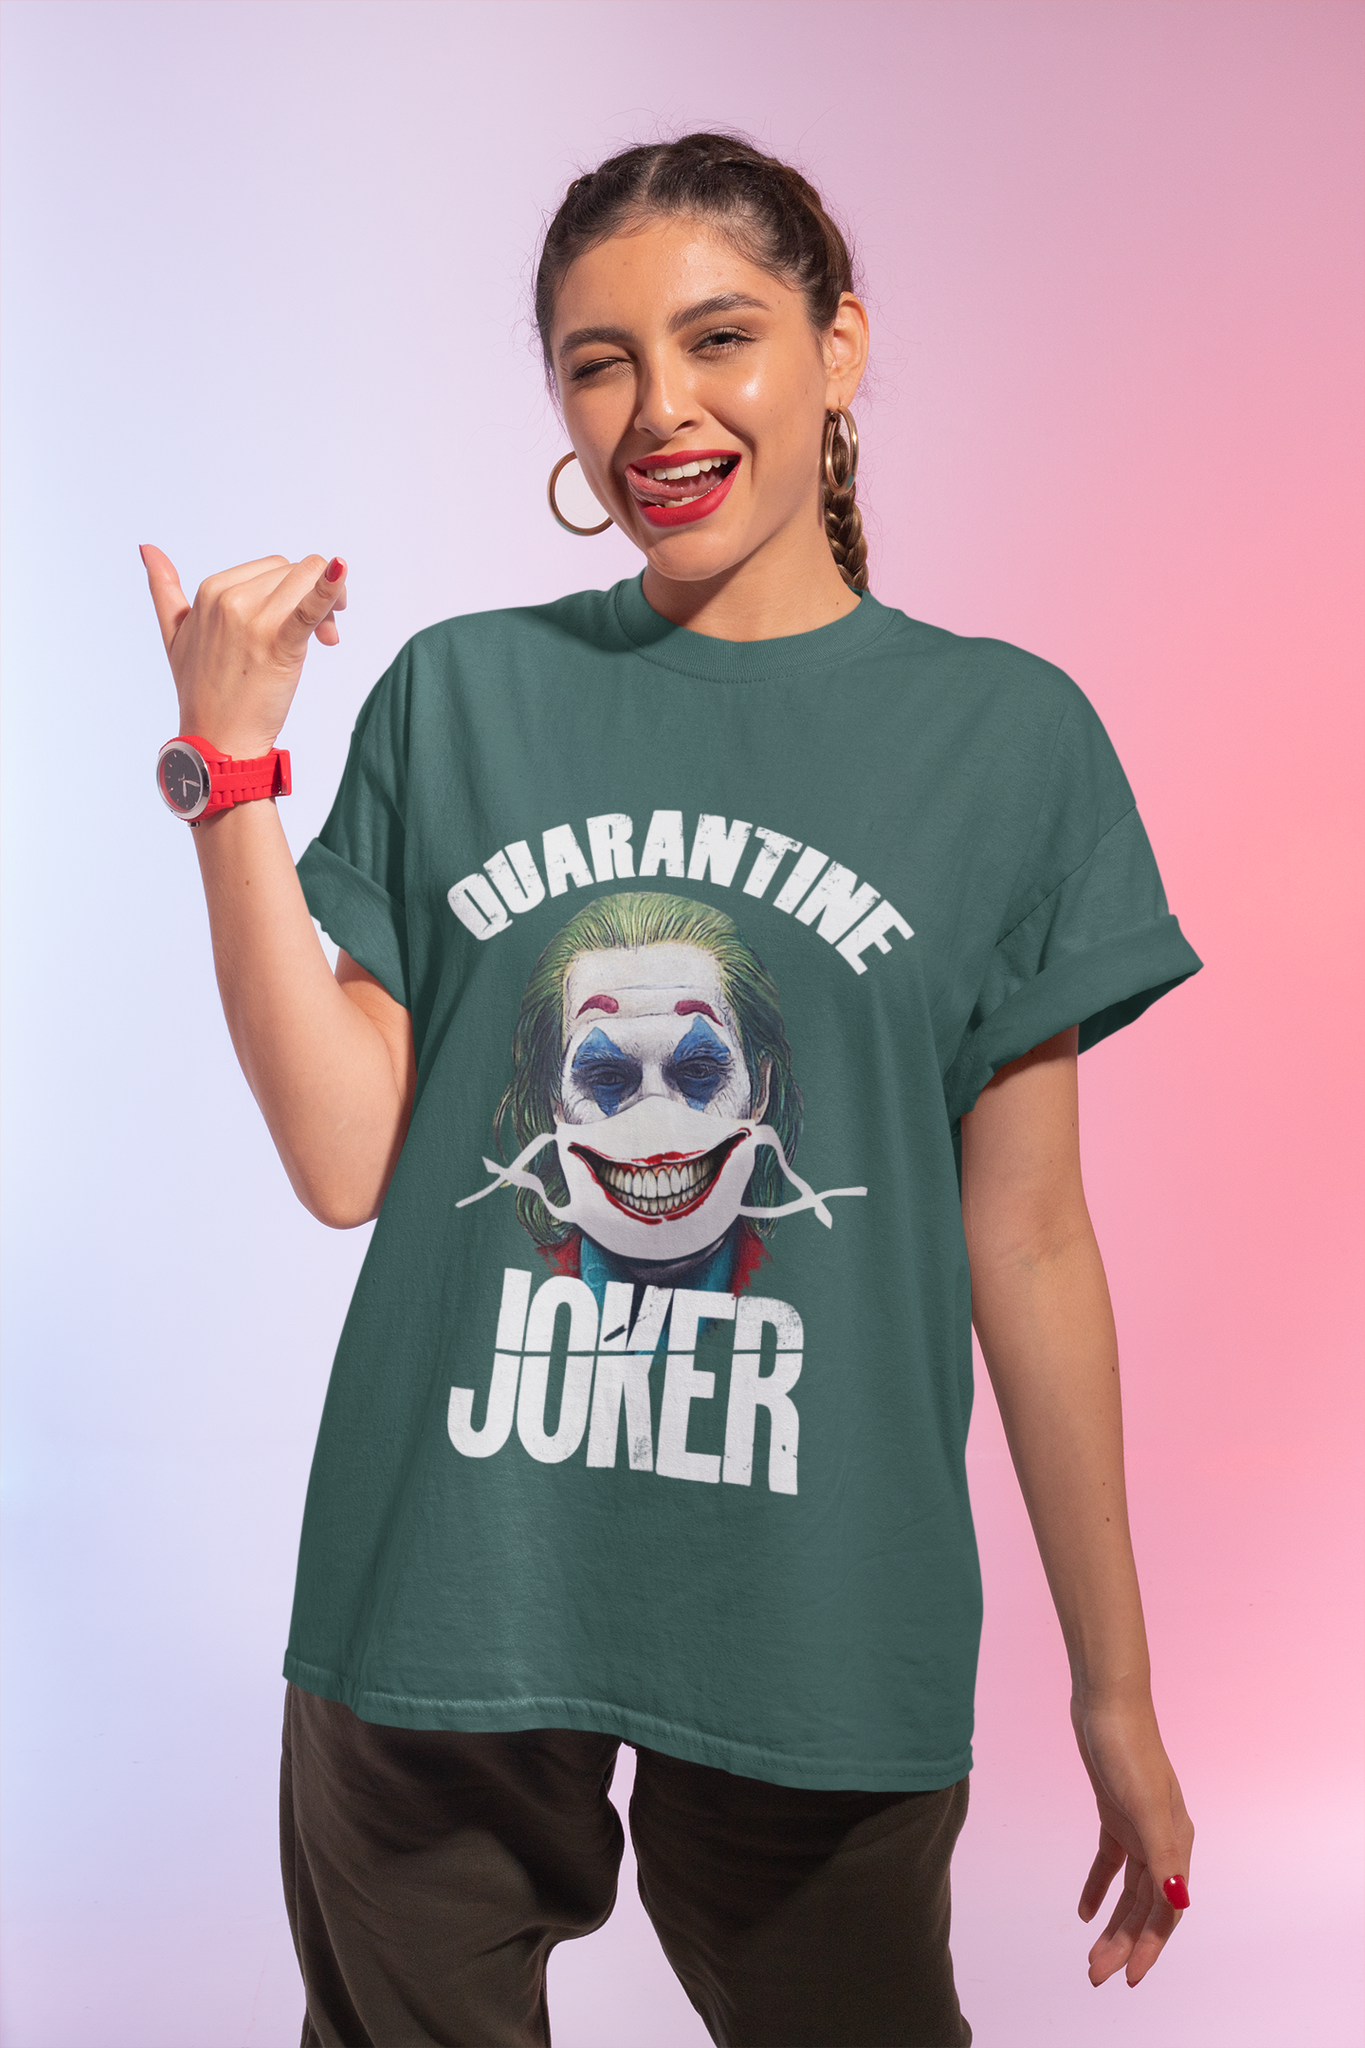 Joker T Shirt, Joker The Comedian T Shirt, Quarantine Joker Tshirt, Halloween Gifts